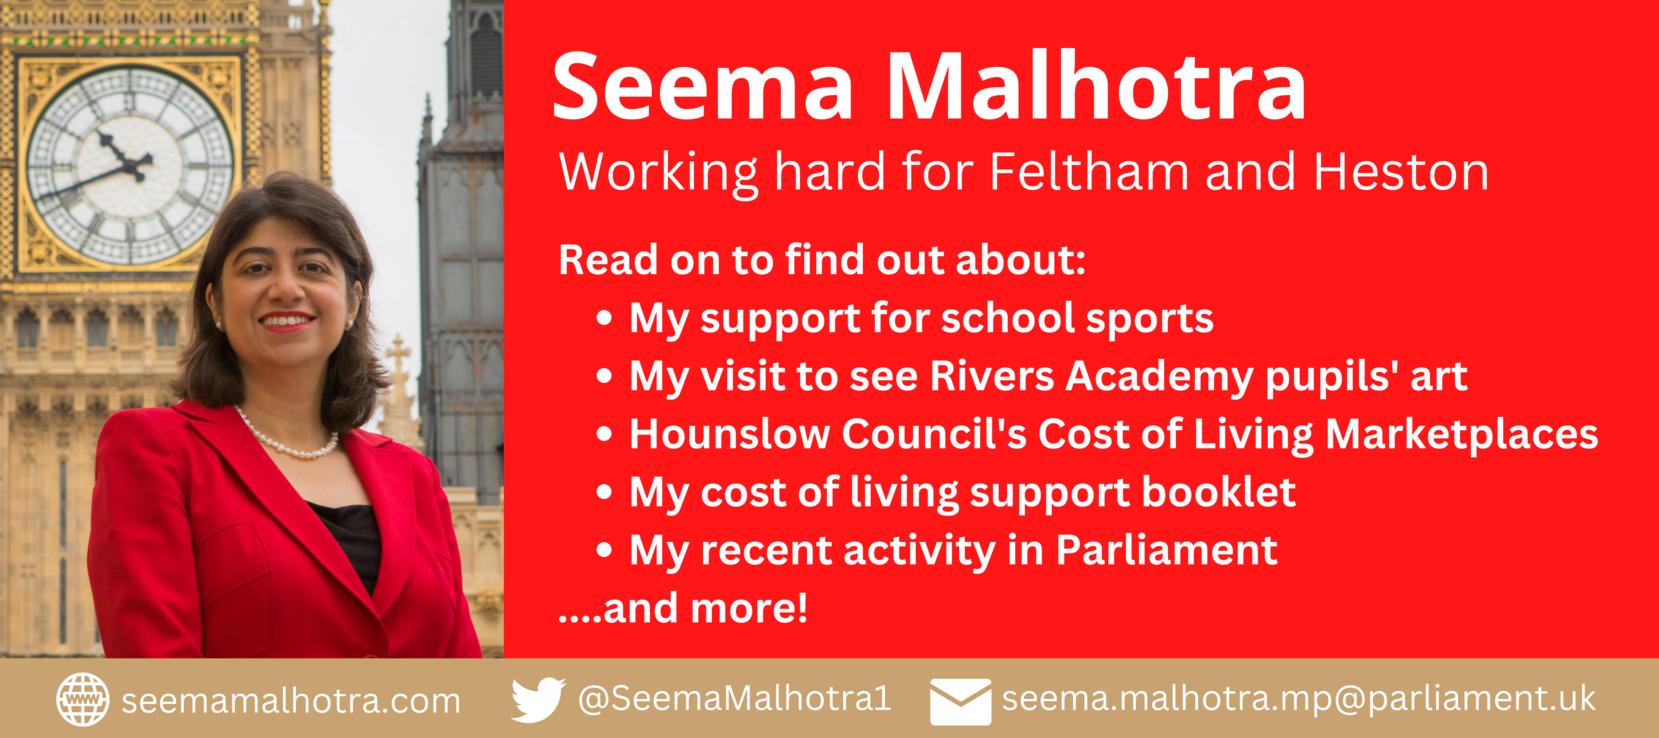 Seema Malhotra: Working hard for Feltham and Heston